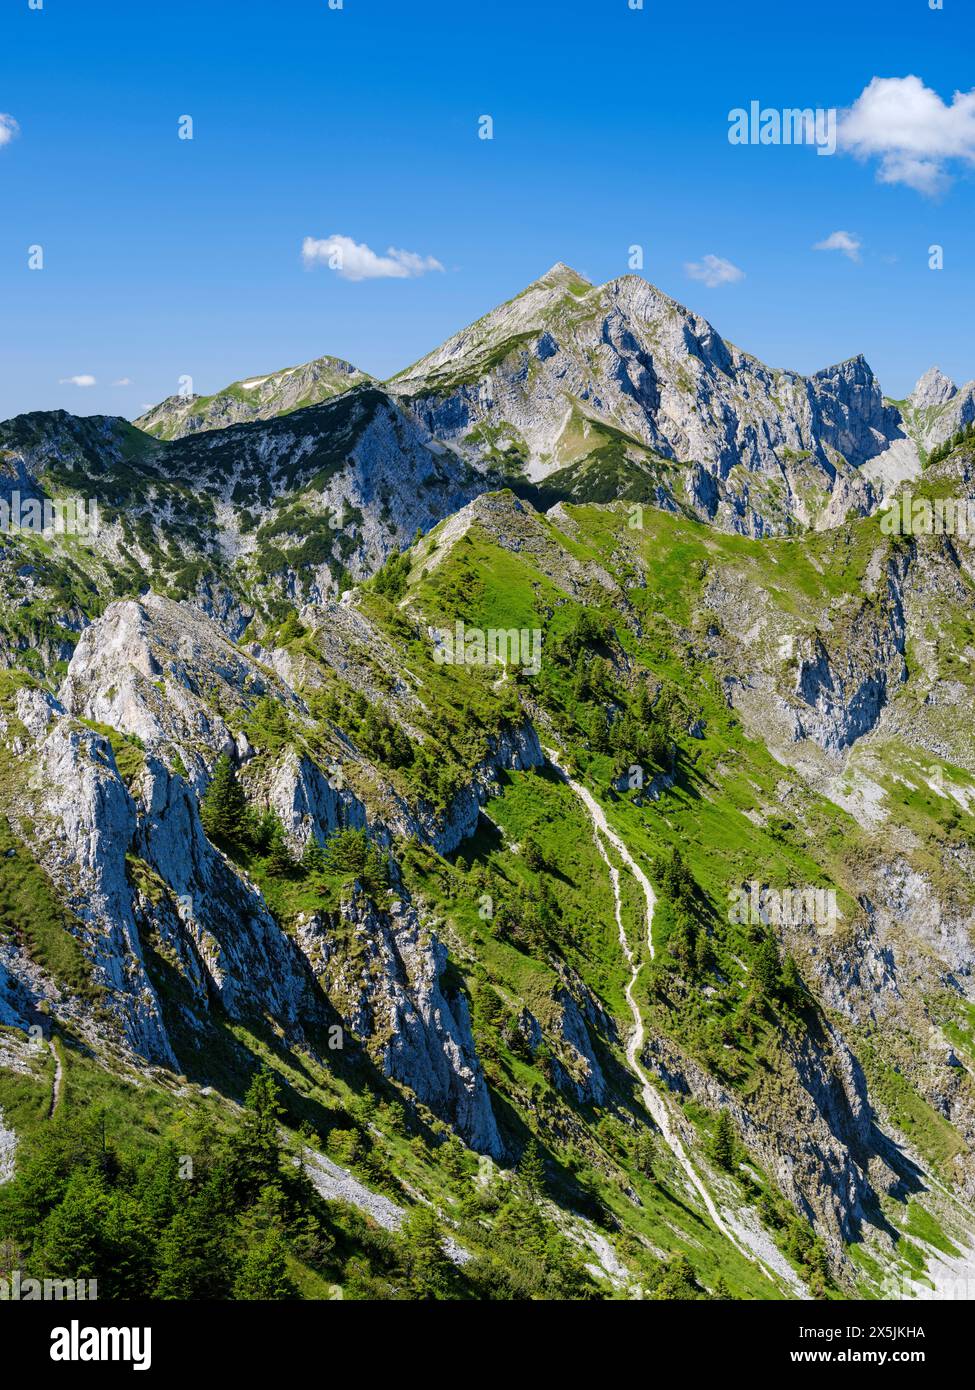 Blick in Richtung Mt. Hochplatte, Mt. Vorderscheinberg und eine Doline namens Kessel. Naturpark Ammergauer Alpen in den nördlichen Kalkalpen Oberbayerns. Stockfoto